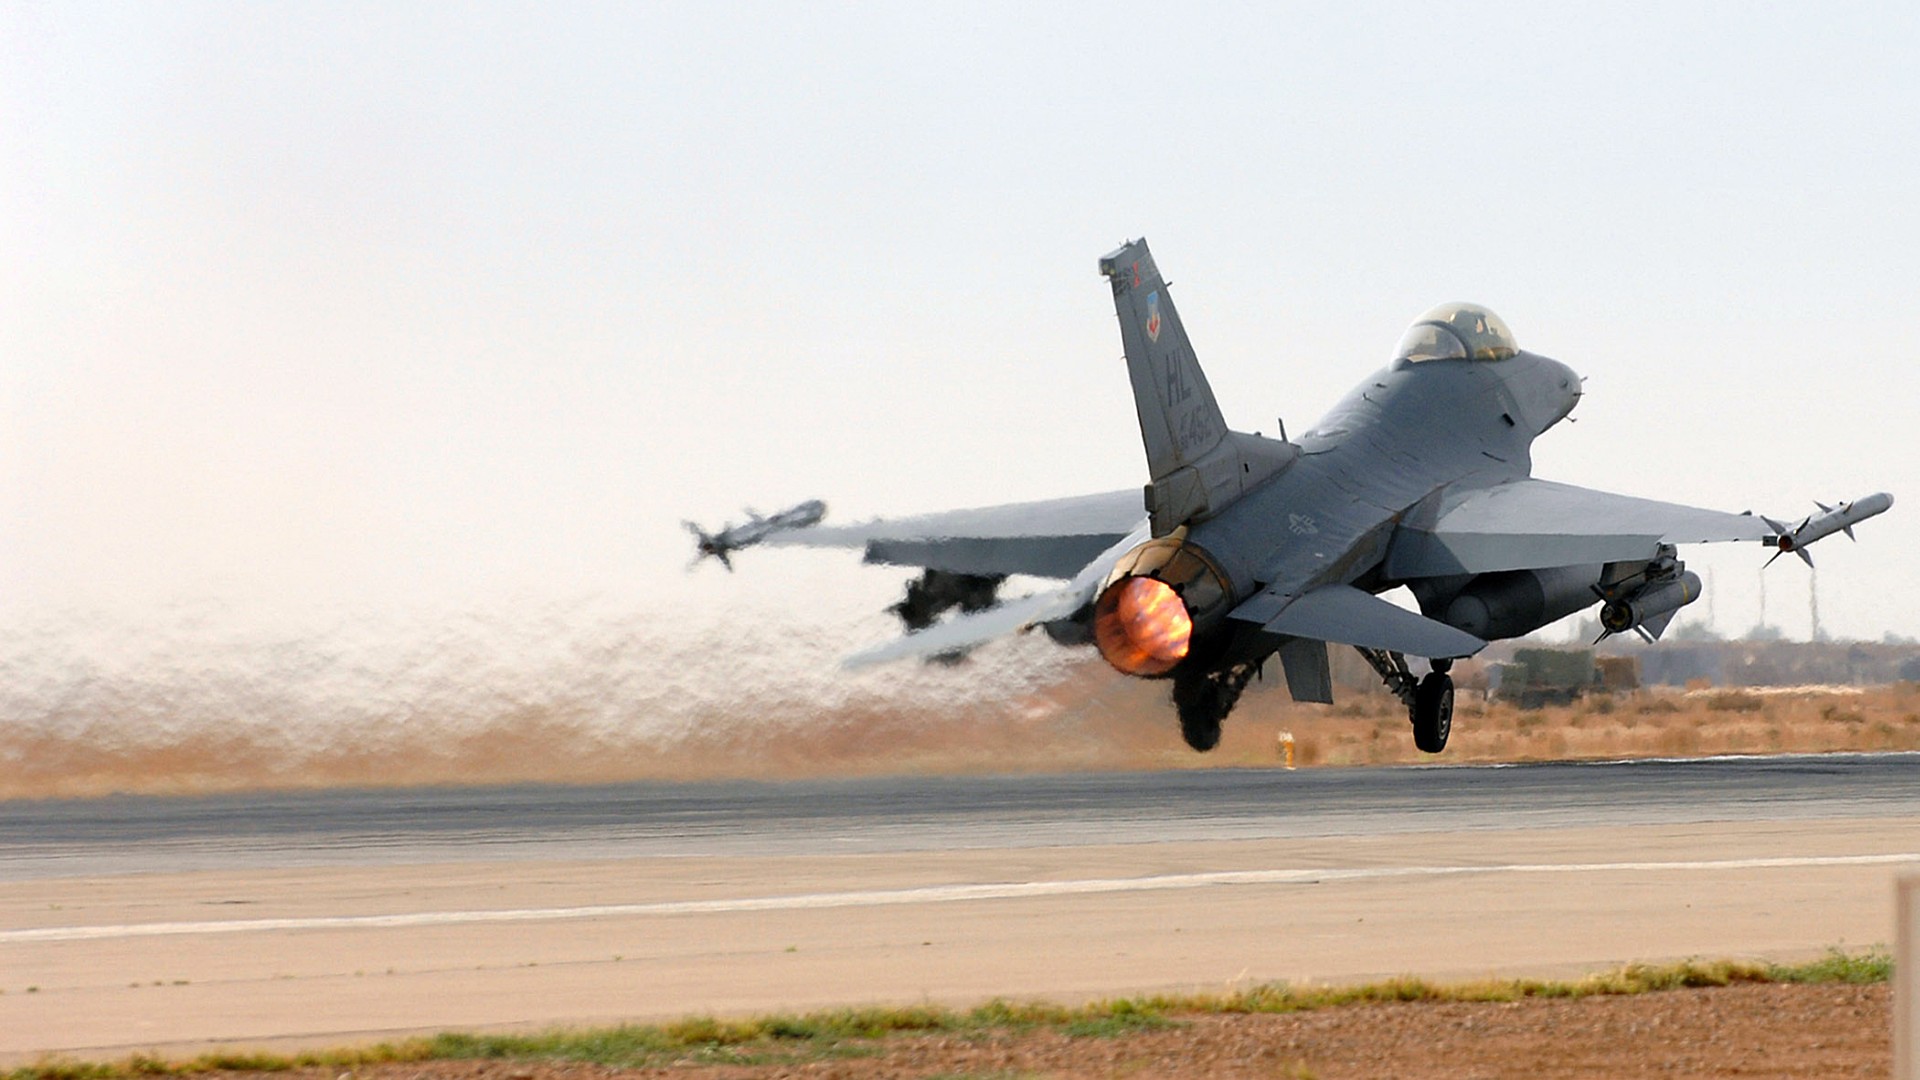 Скачать обои бесплатно Военные, General Dynamics F 16 Файтинг Фэлкон, Реактивные Истребители картинка на рабочий стол ПК